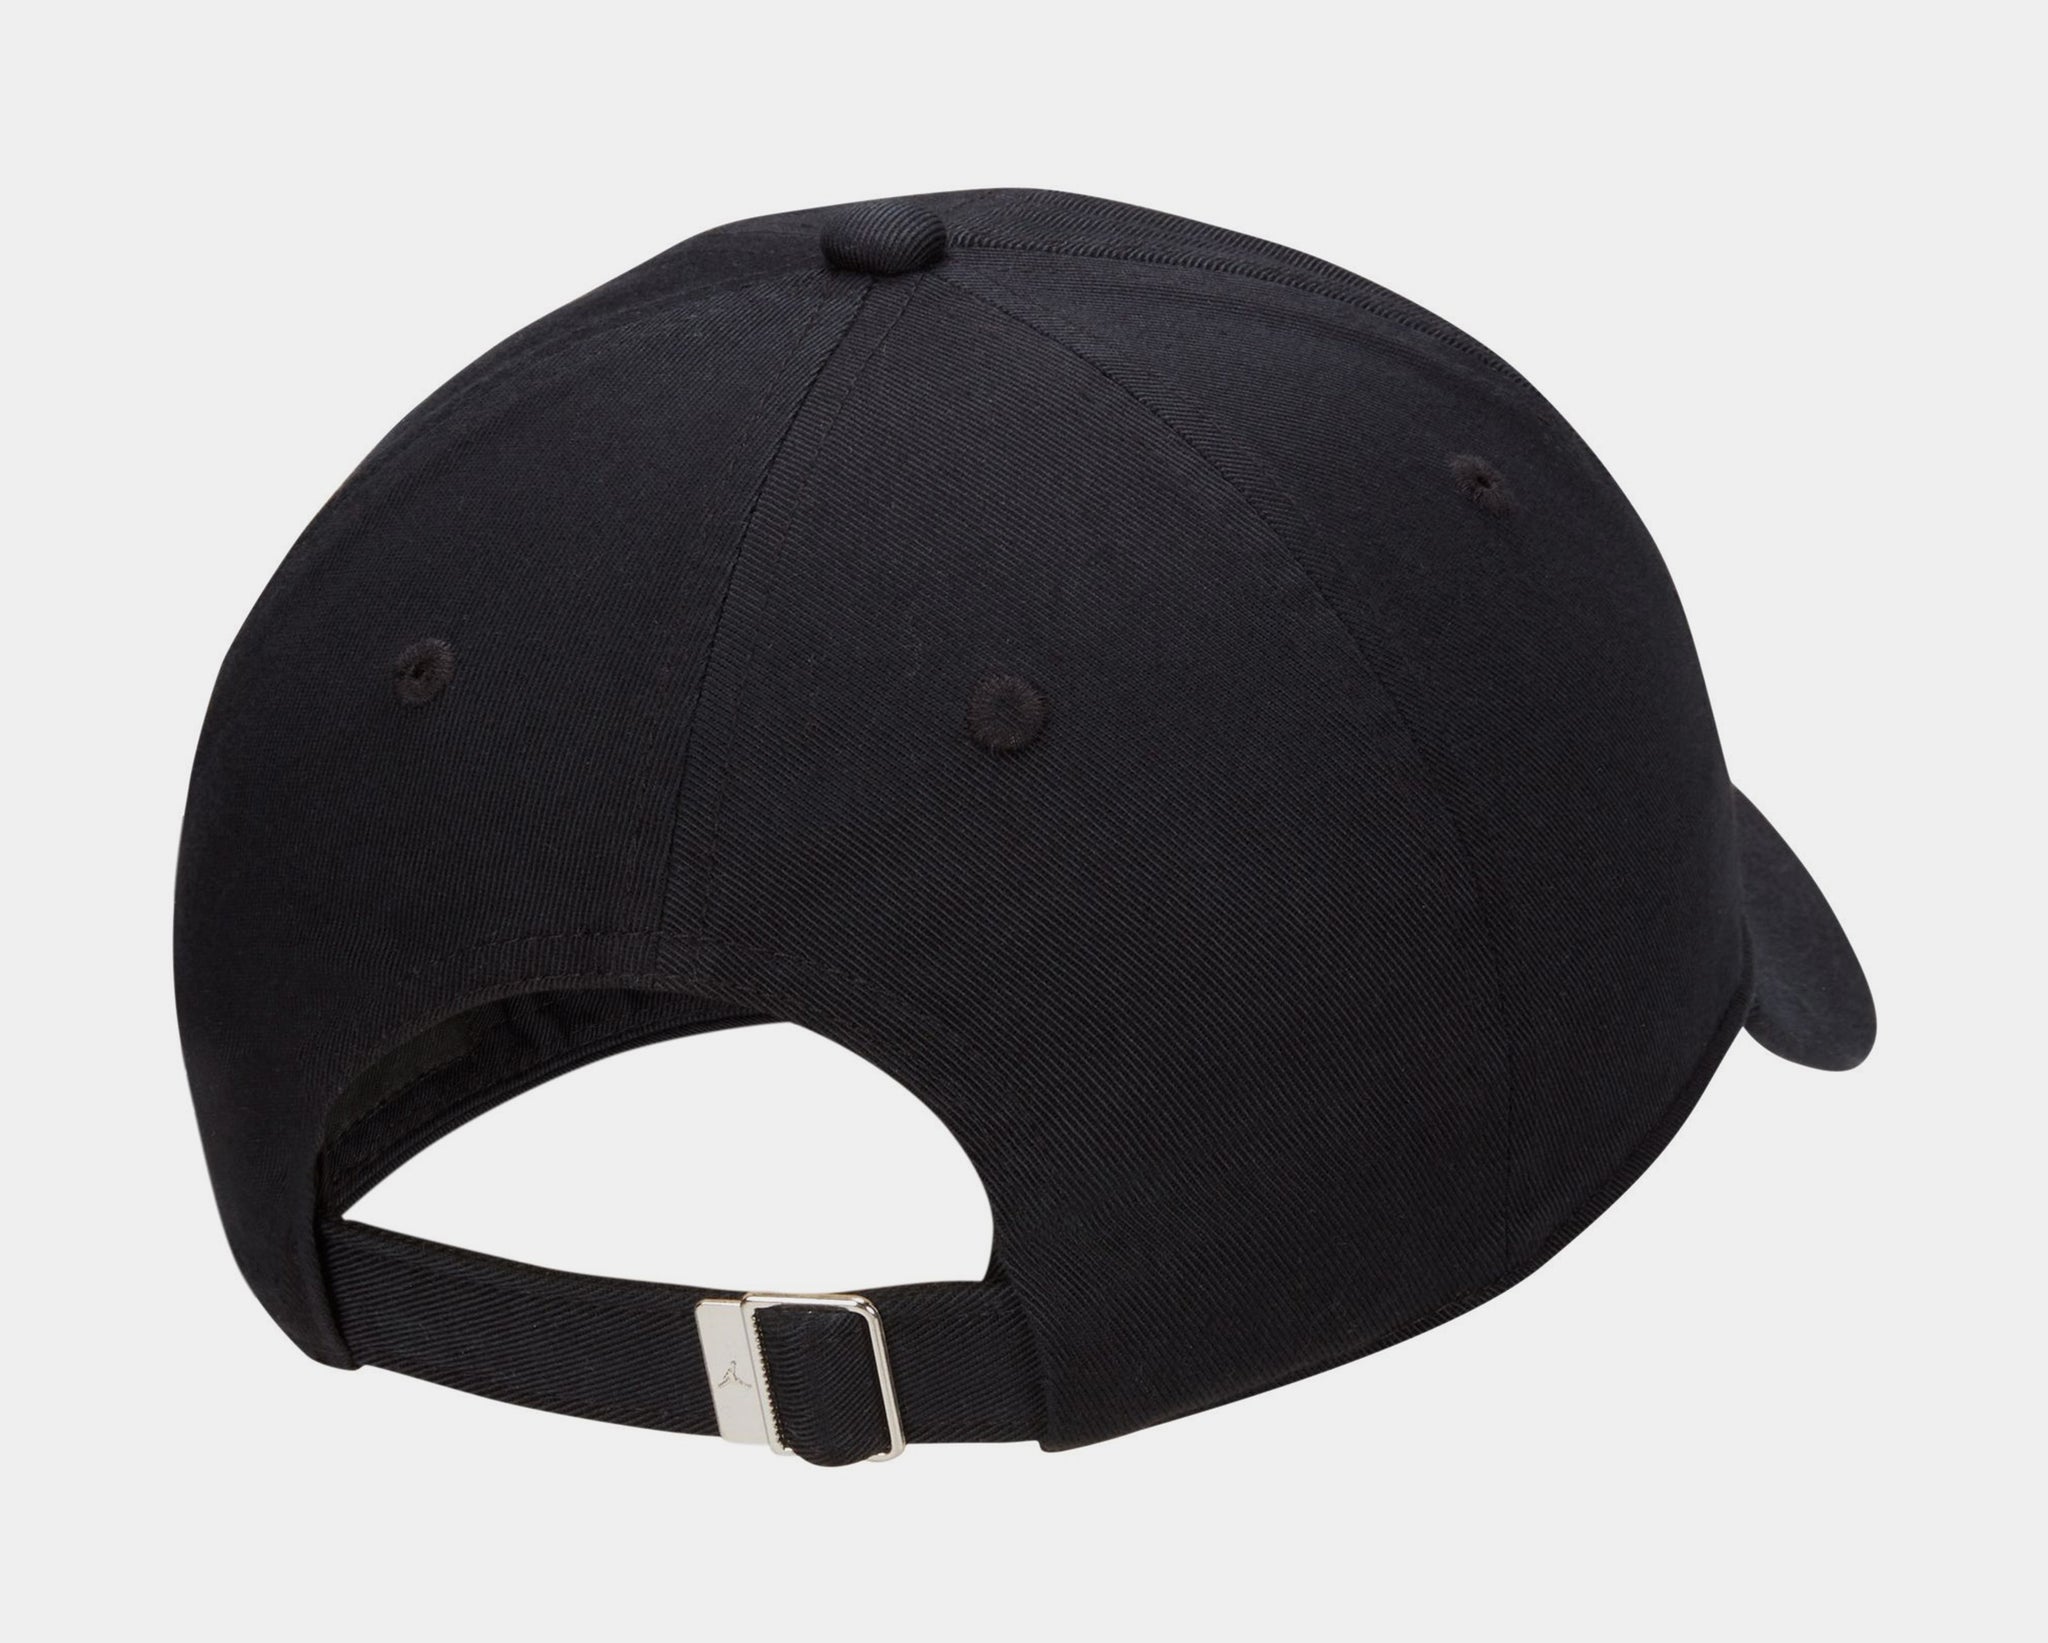 Club Cap Adjustable Mens Hat (Black/White)